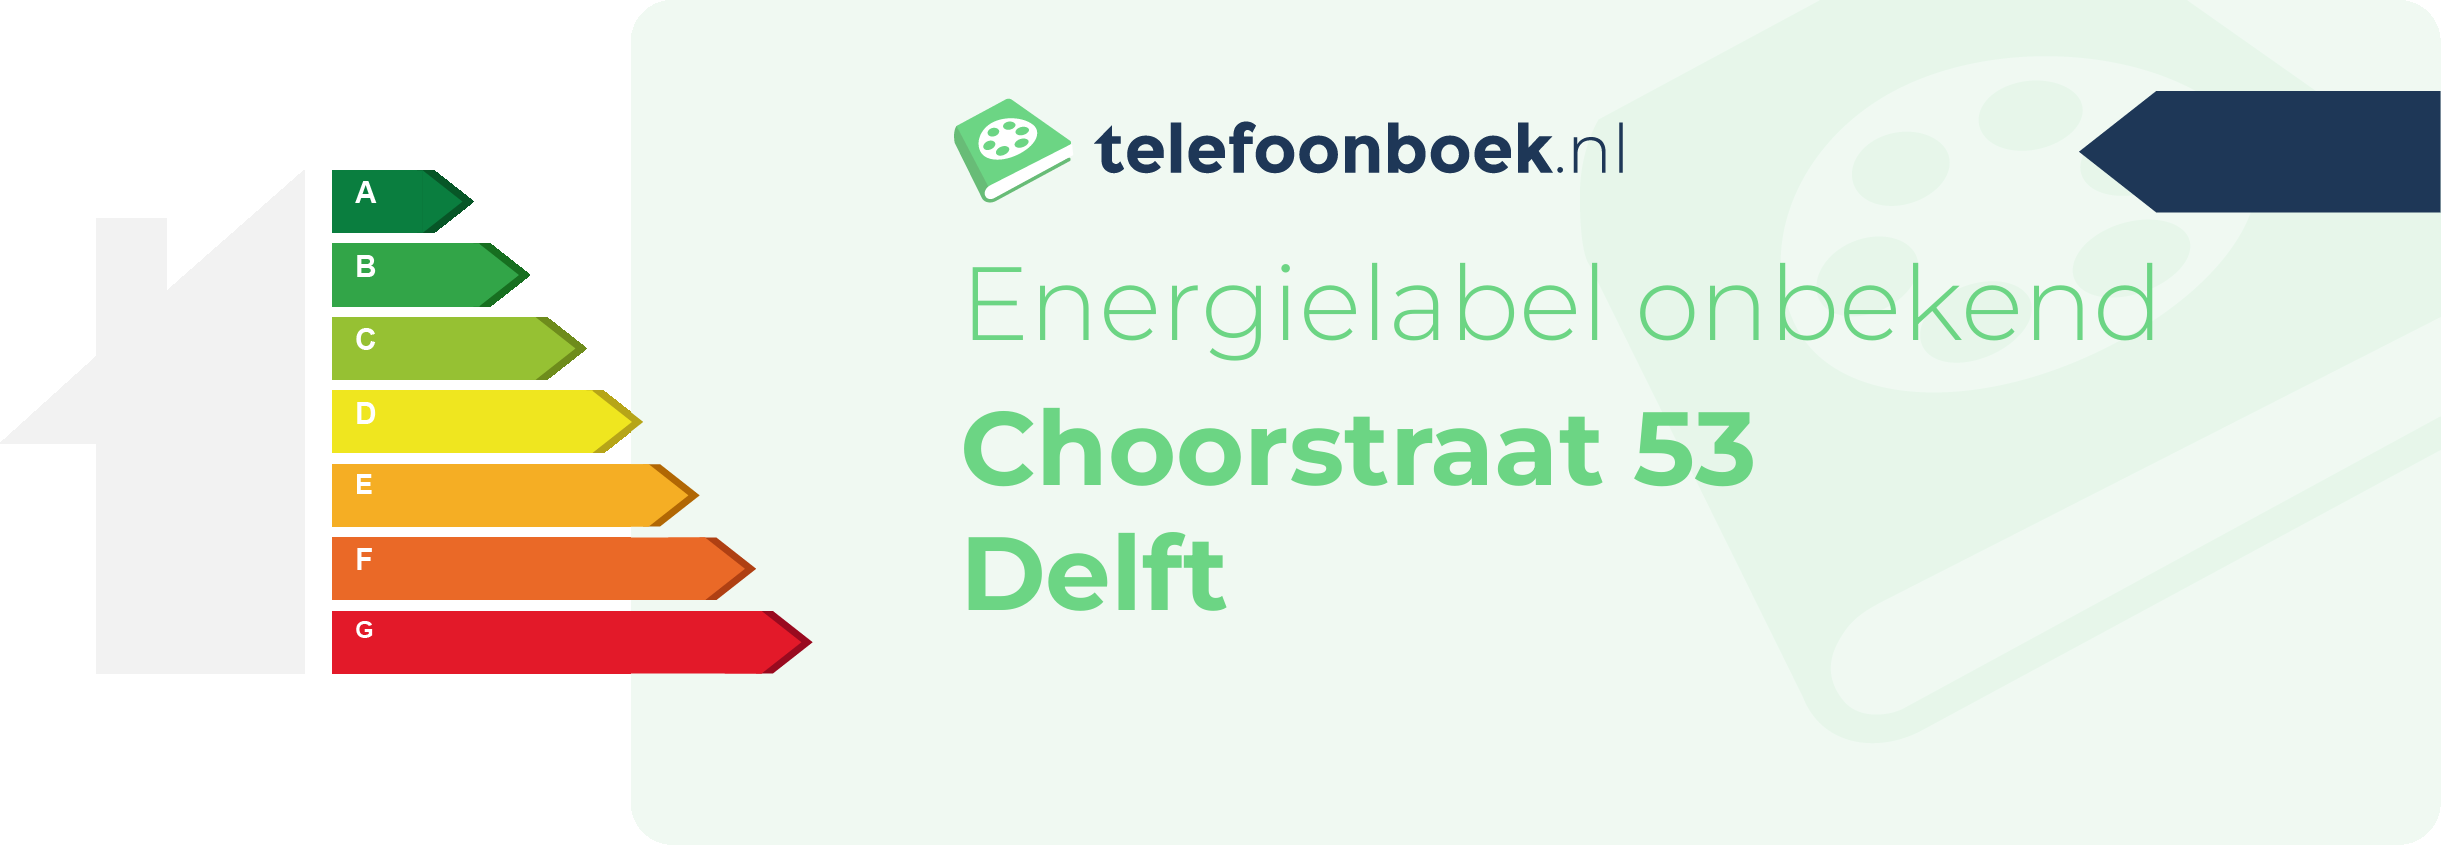 Energielabel Choorstraat 53 Delft